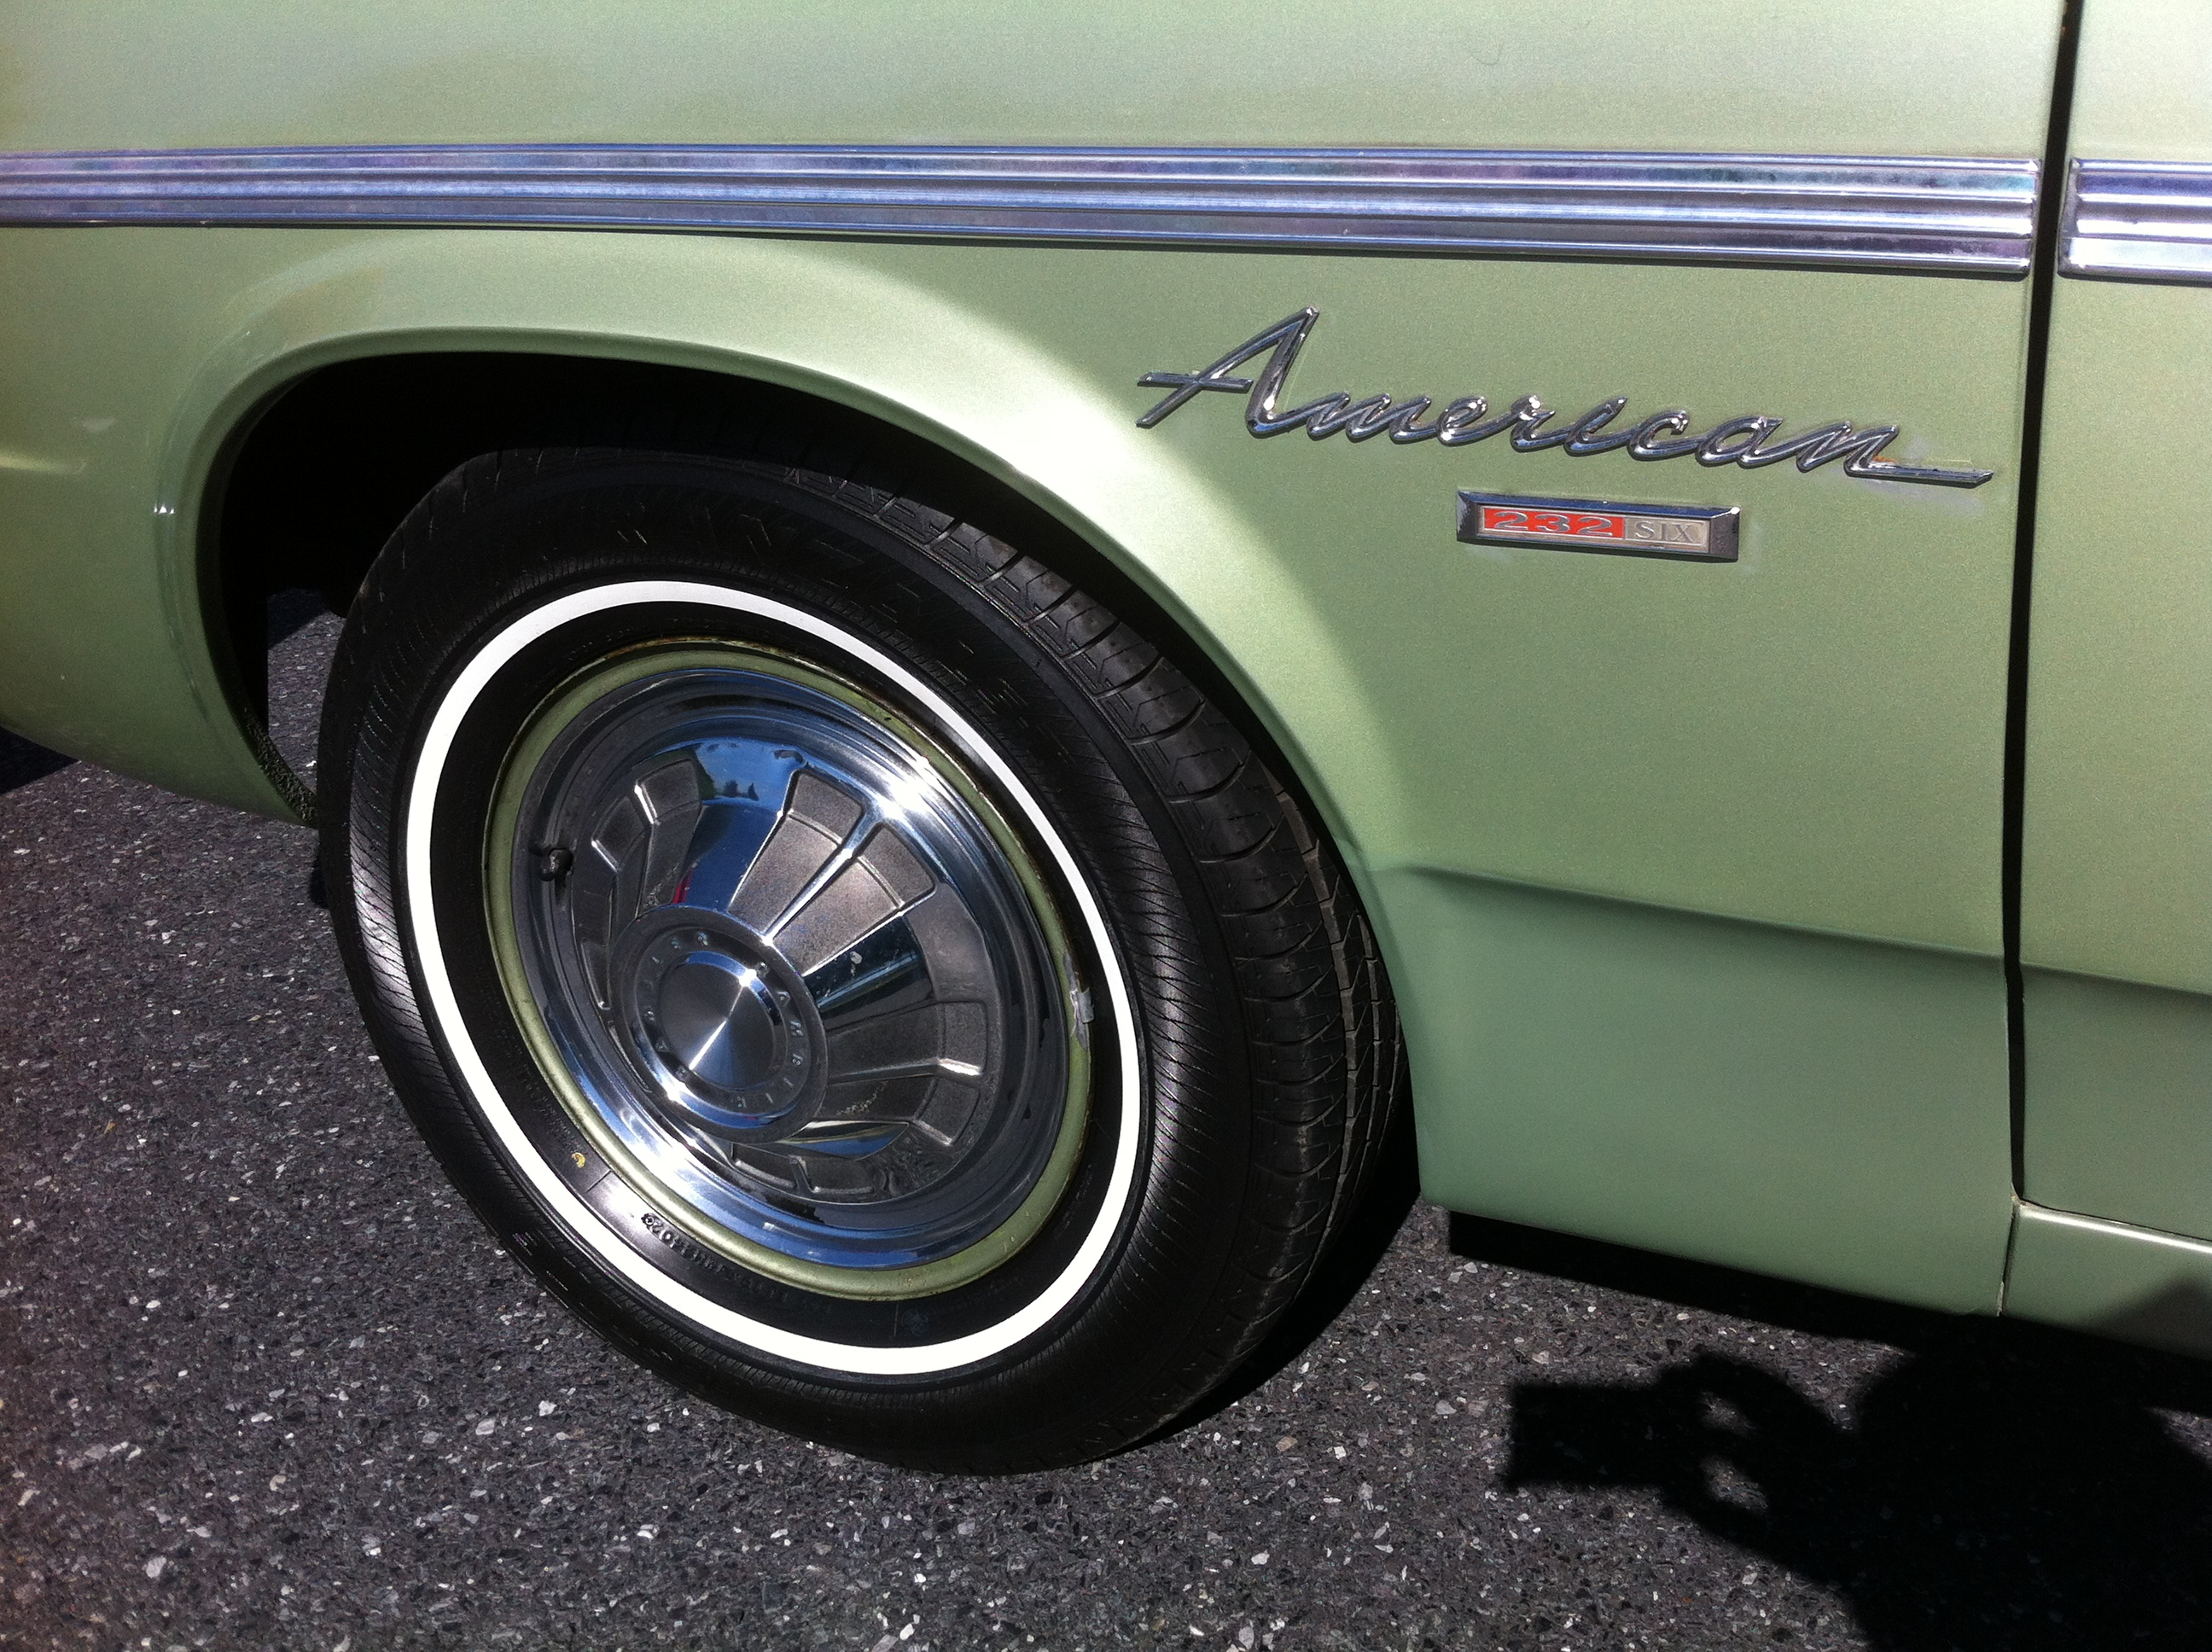 1968 Rambler American 440 4-door Hershey 2012 w